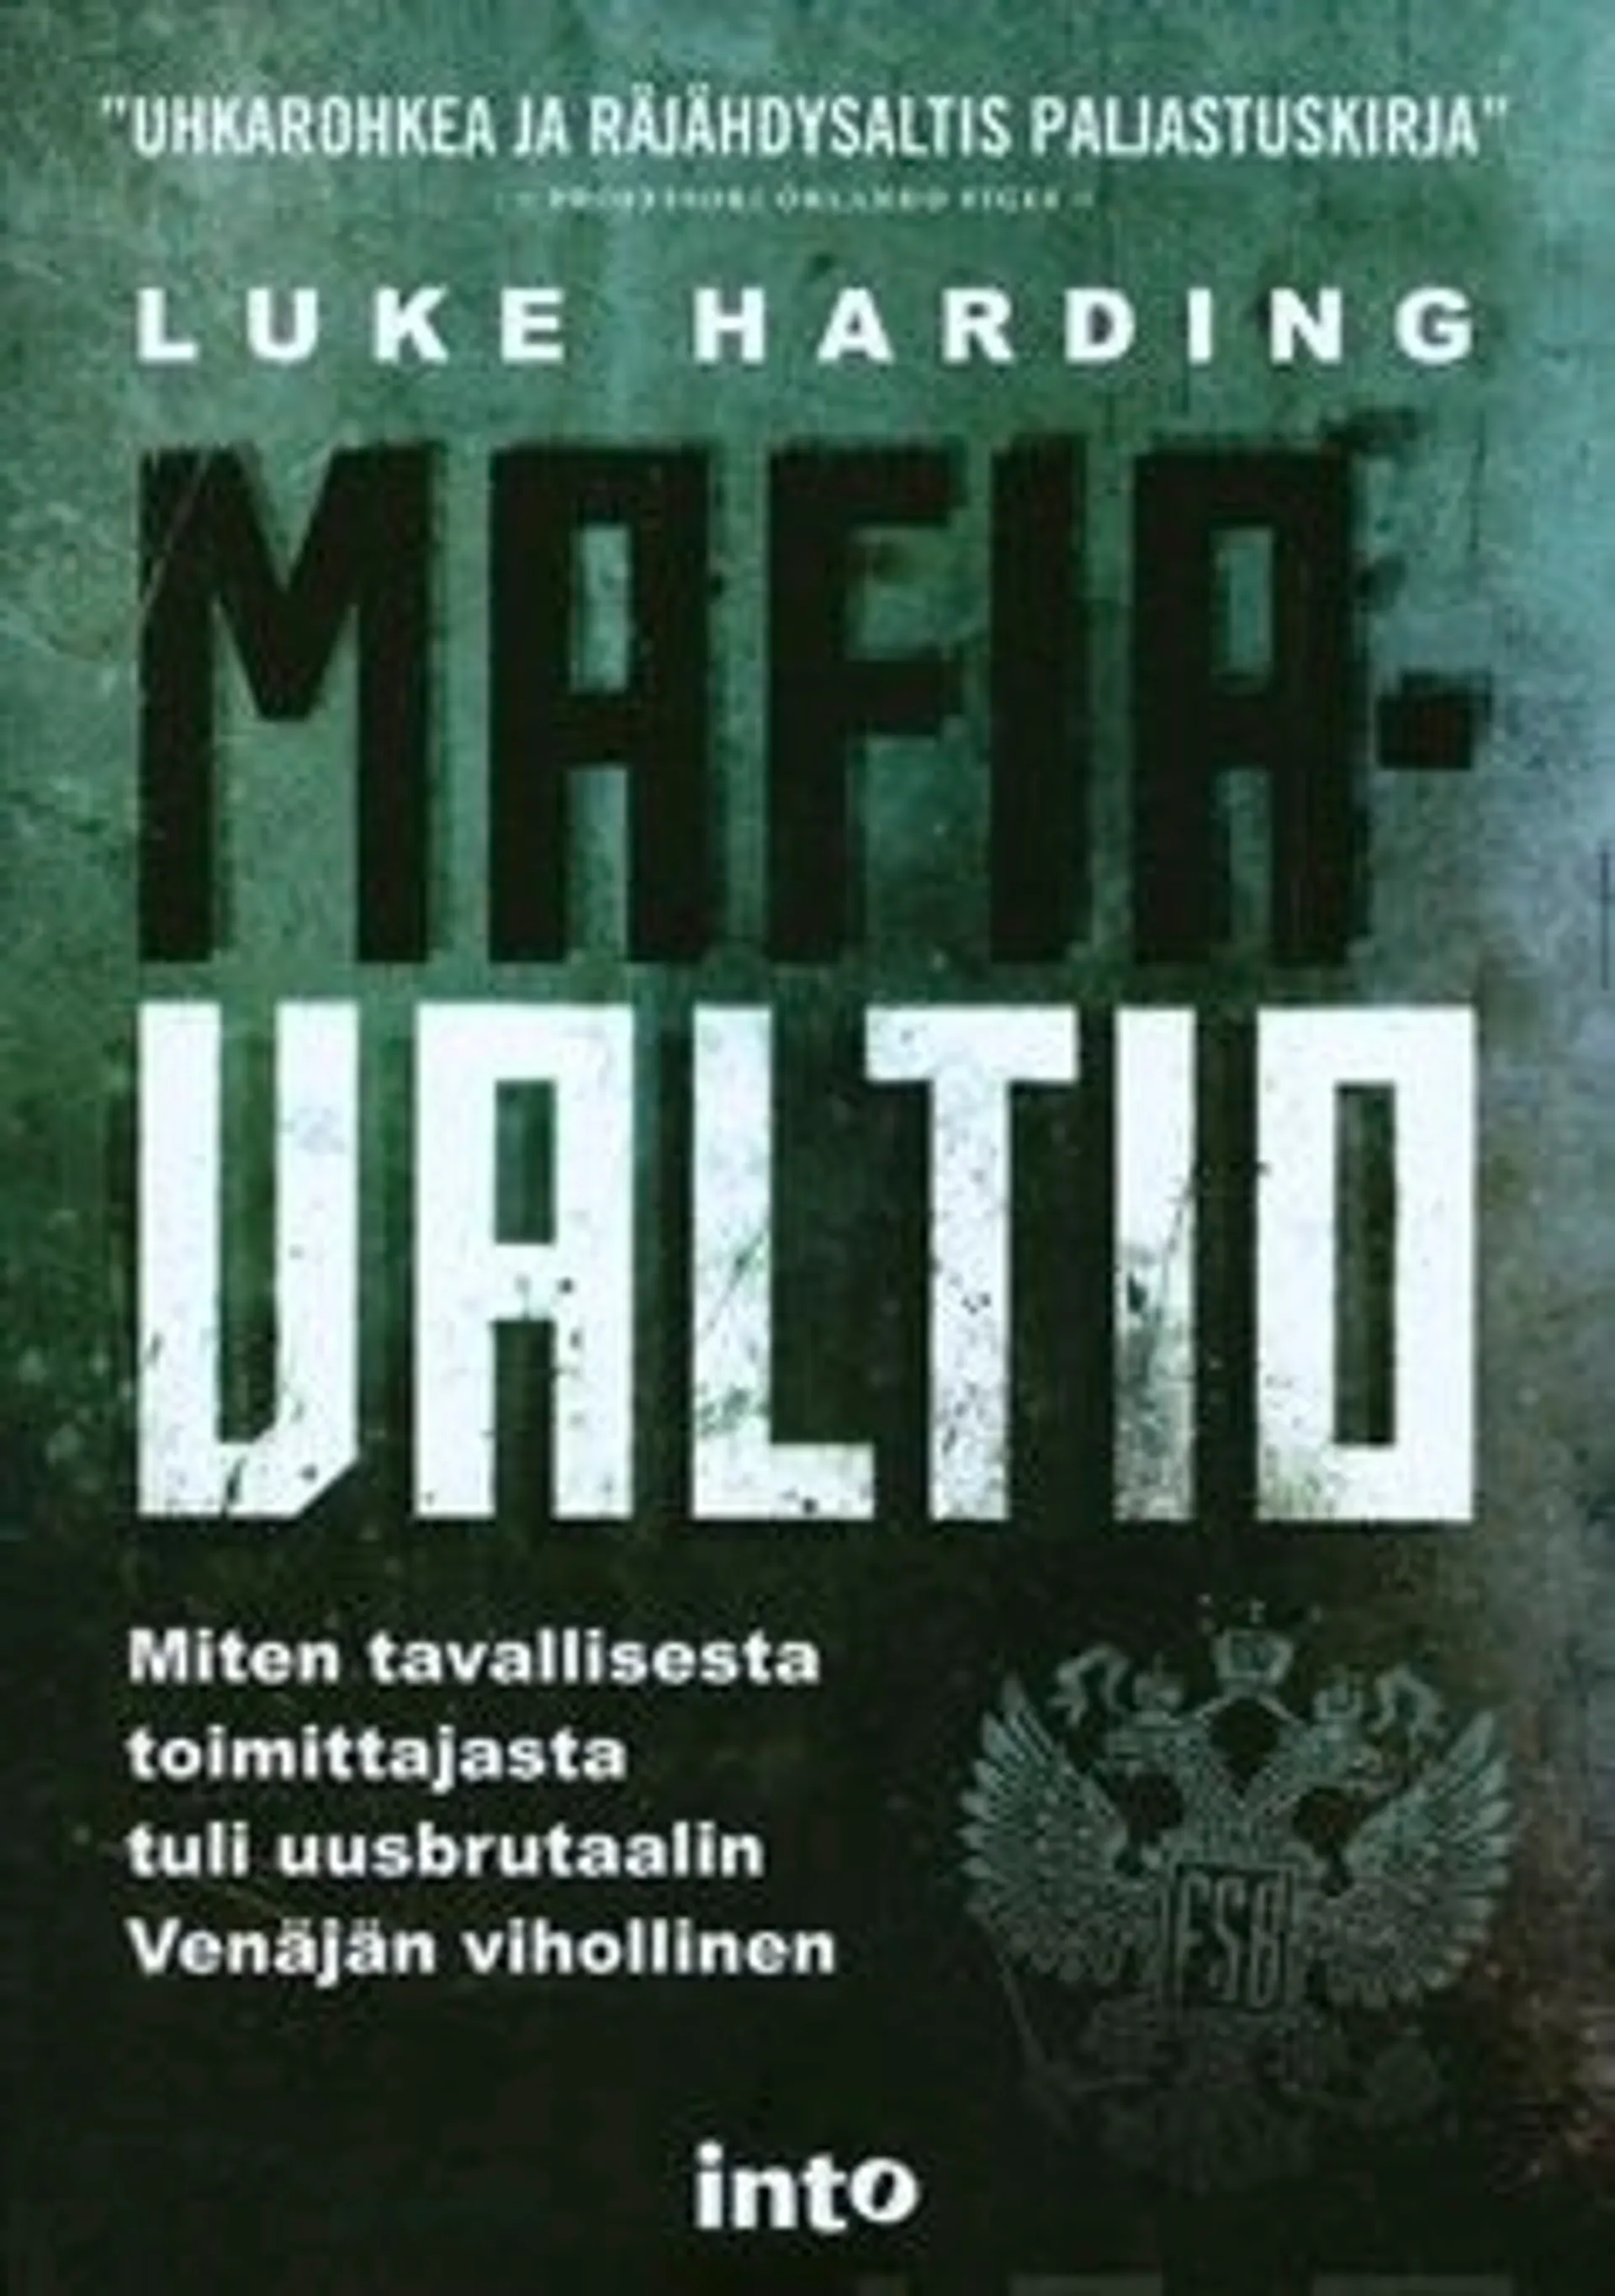 Harding, Mafiavaltio